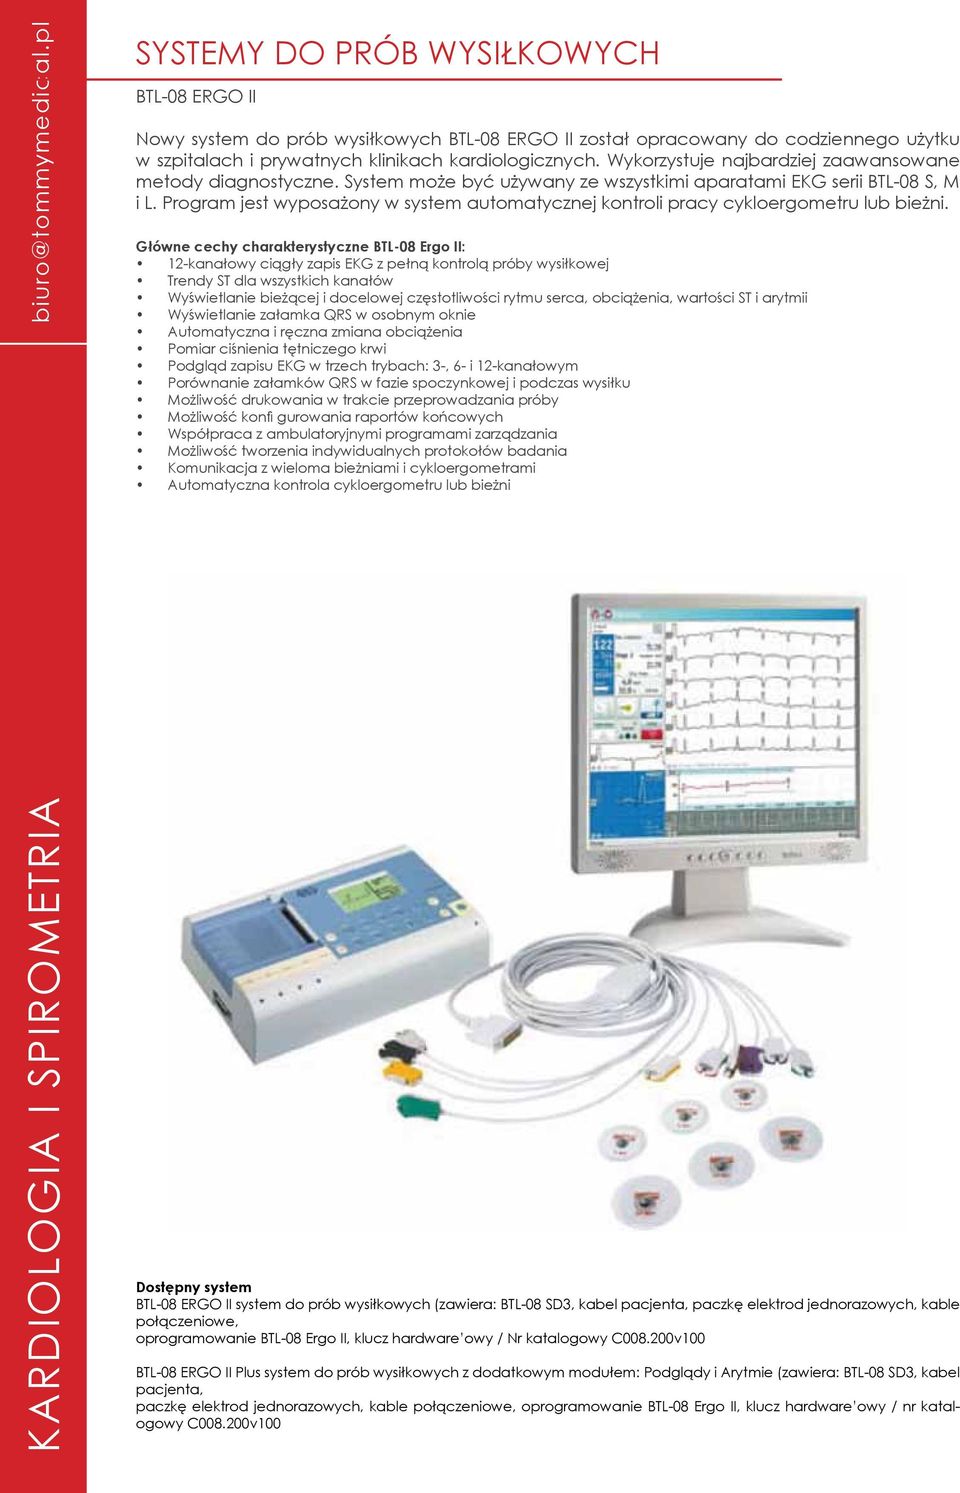 Wykorzystuje najbardziej zaawansowane metody diagnostyczne. System może być używany ze wszystkimi aparatami EKG serii BTL-08 S, M i L.